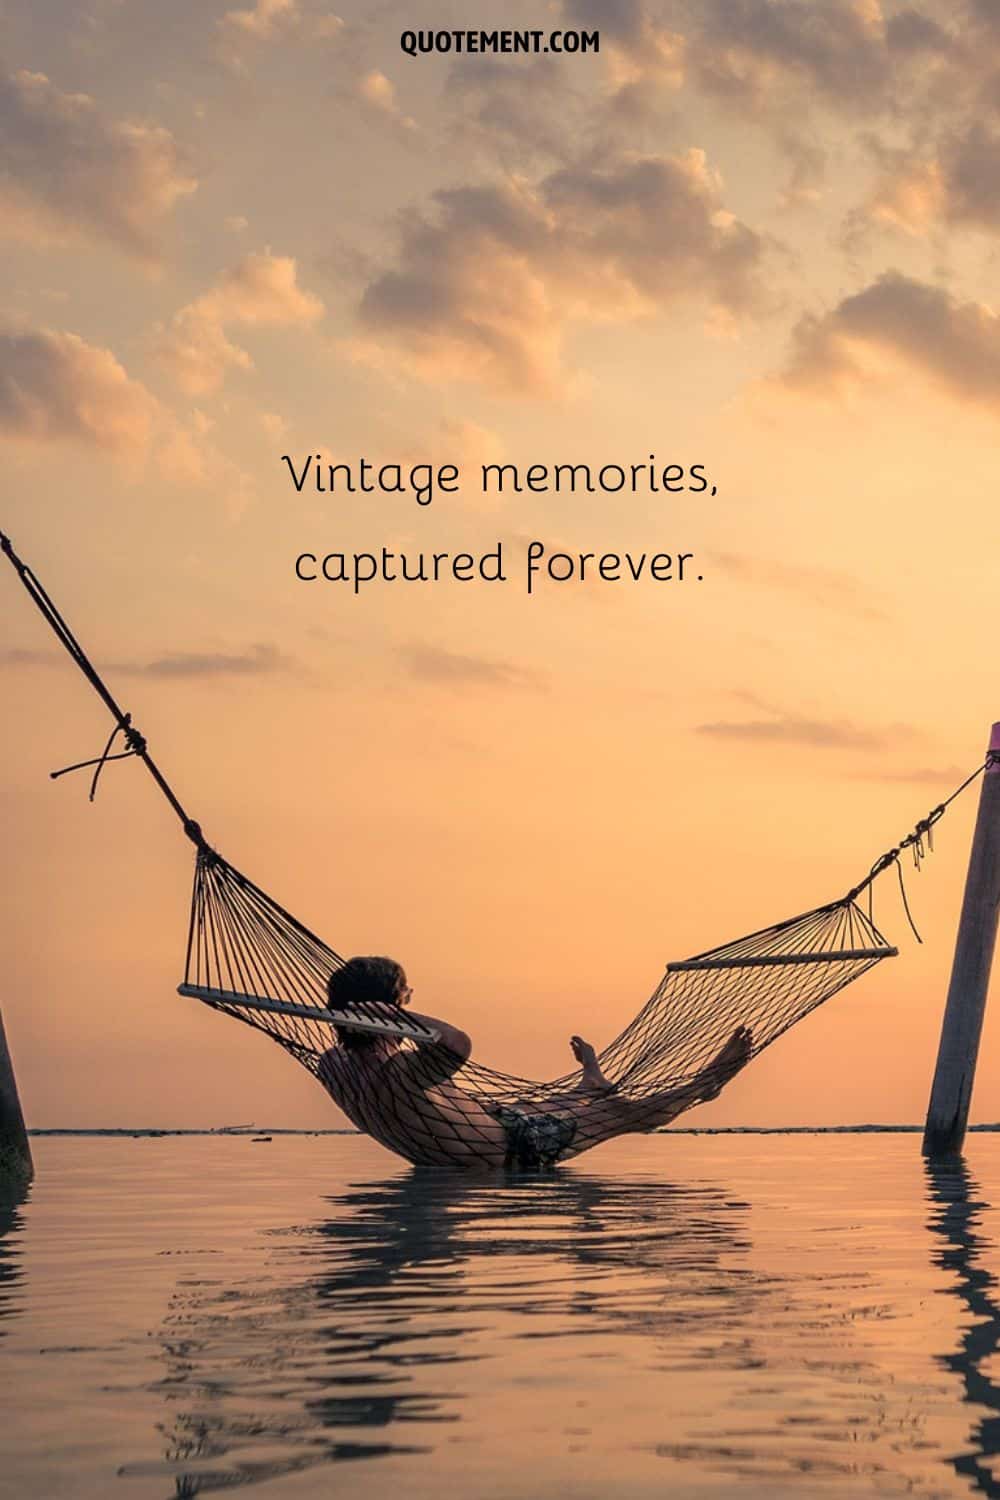 Vintage memories, captured forever.
